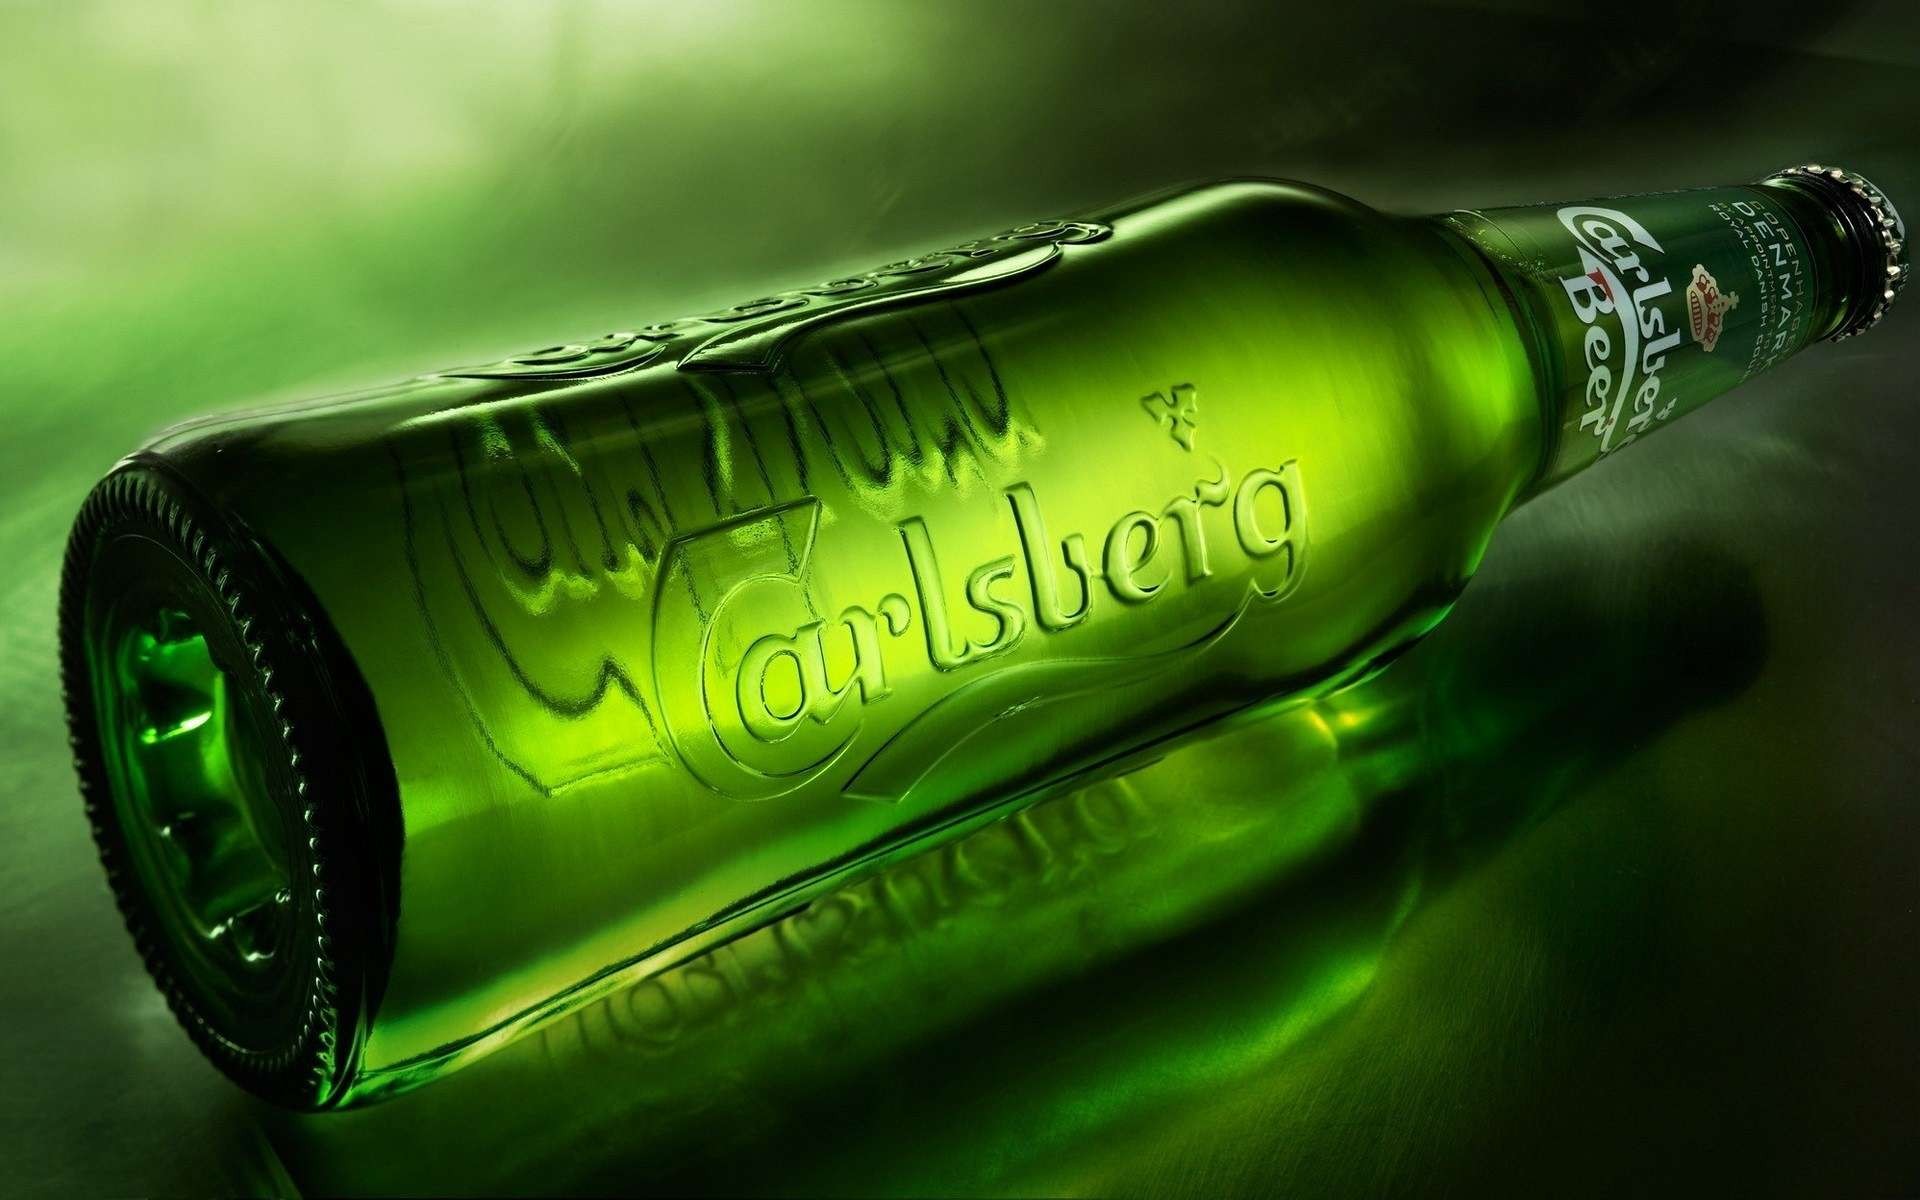 General 1920x1200 Carlsberg beer bottles advertisements alcohol